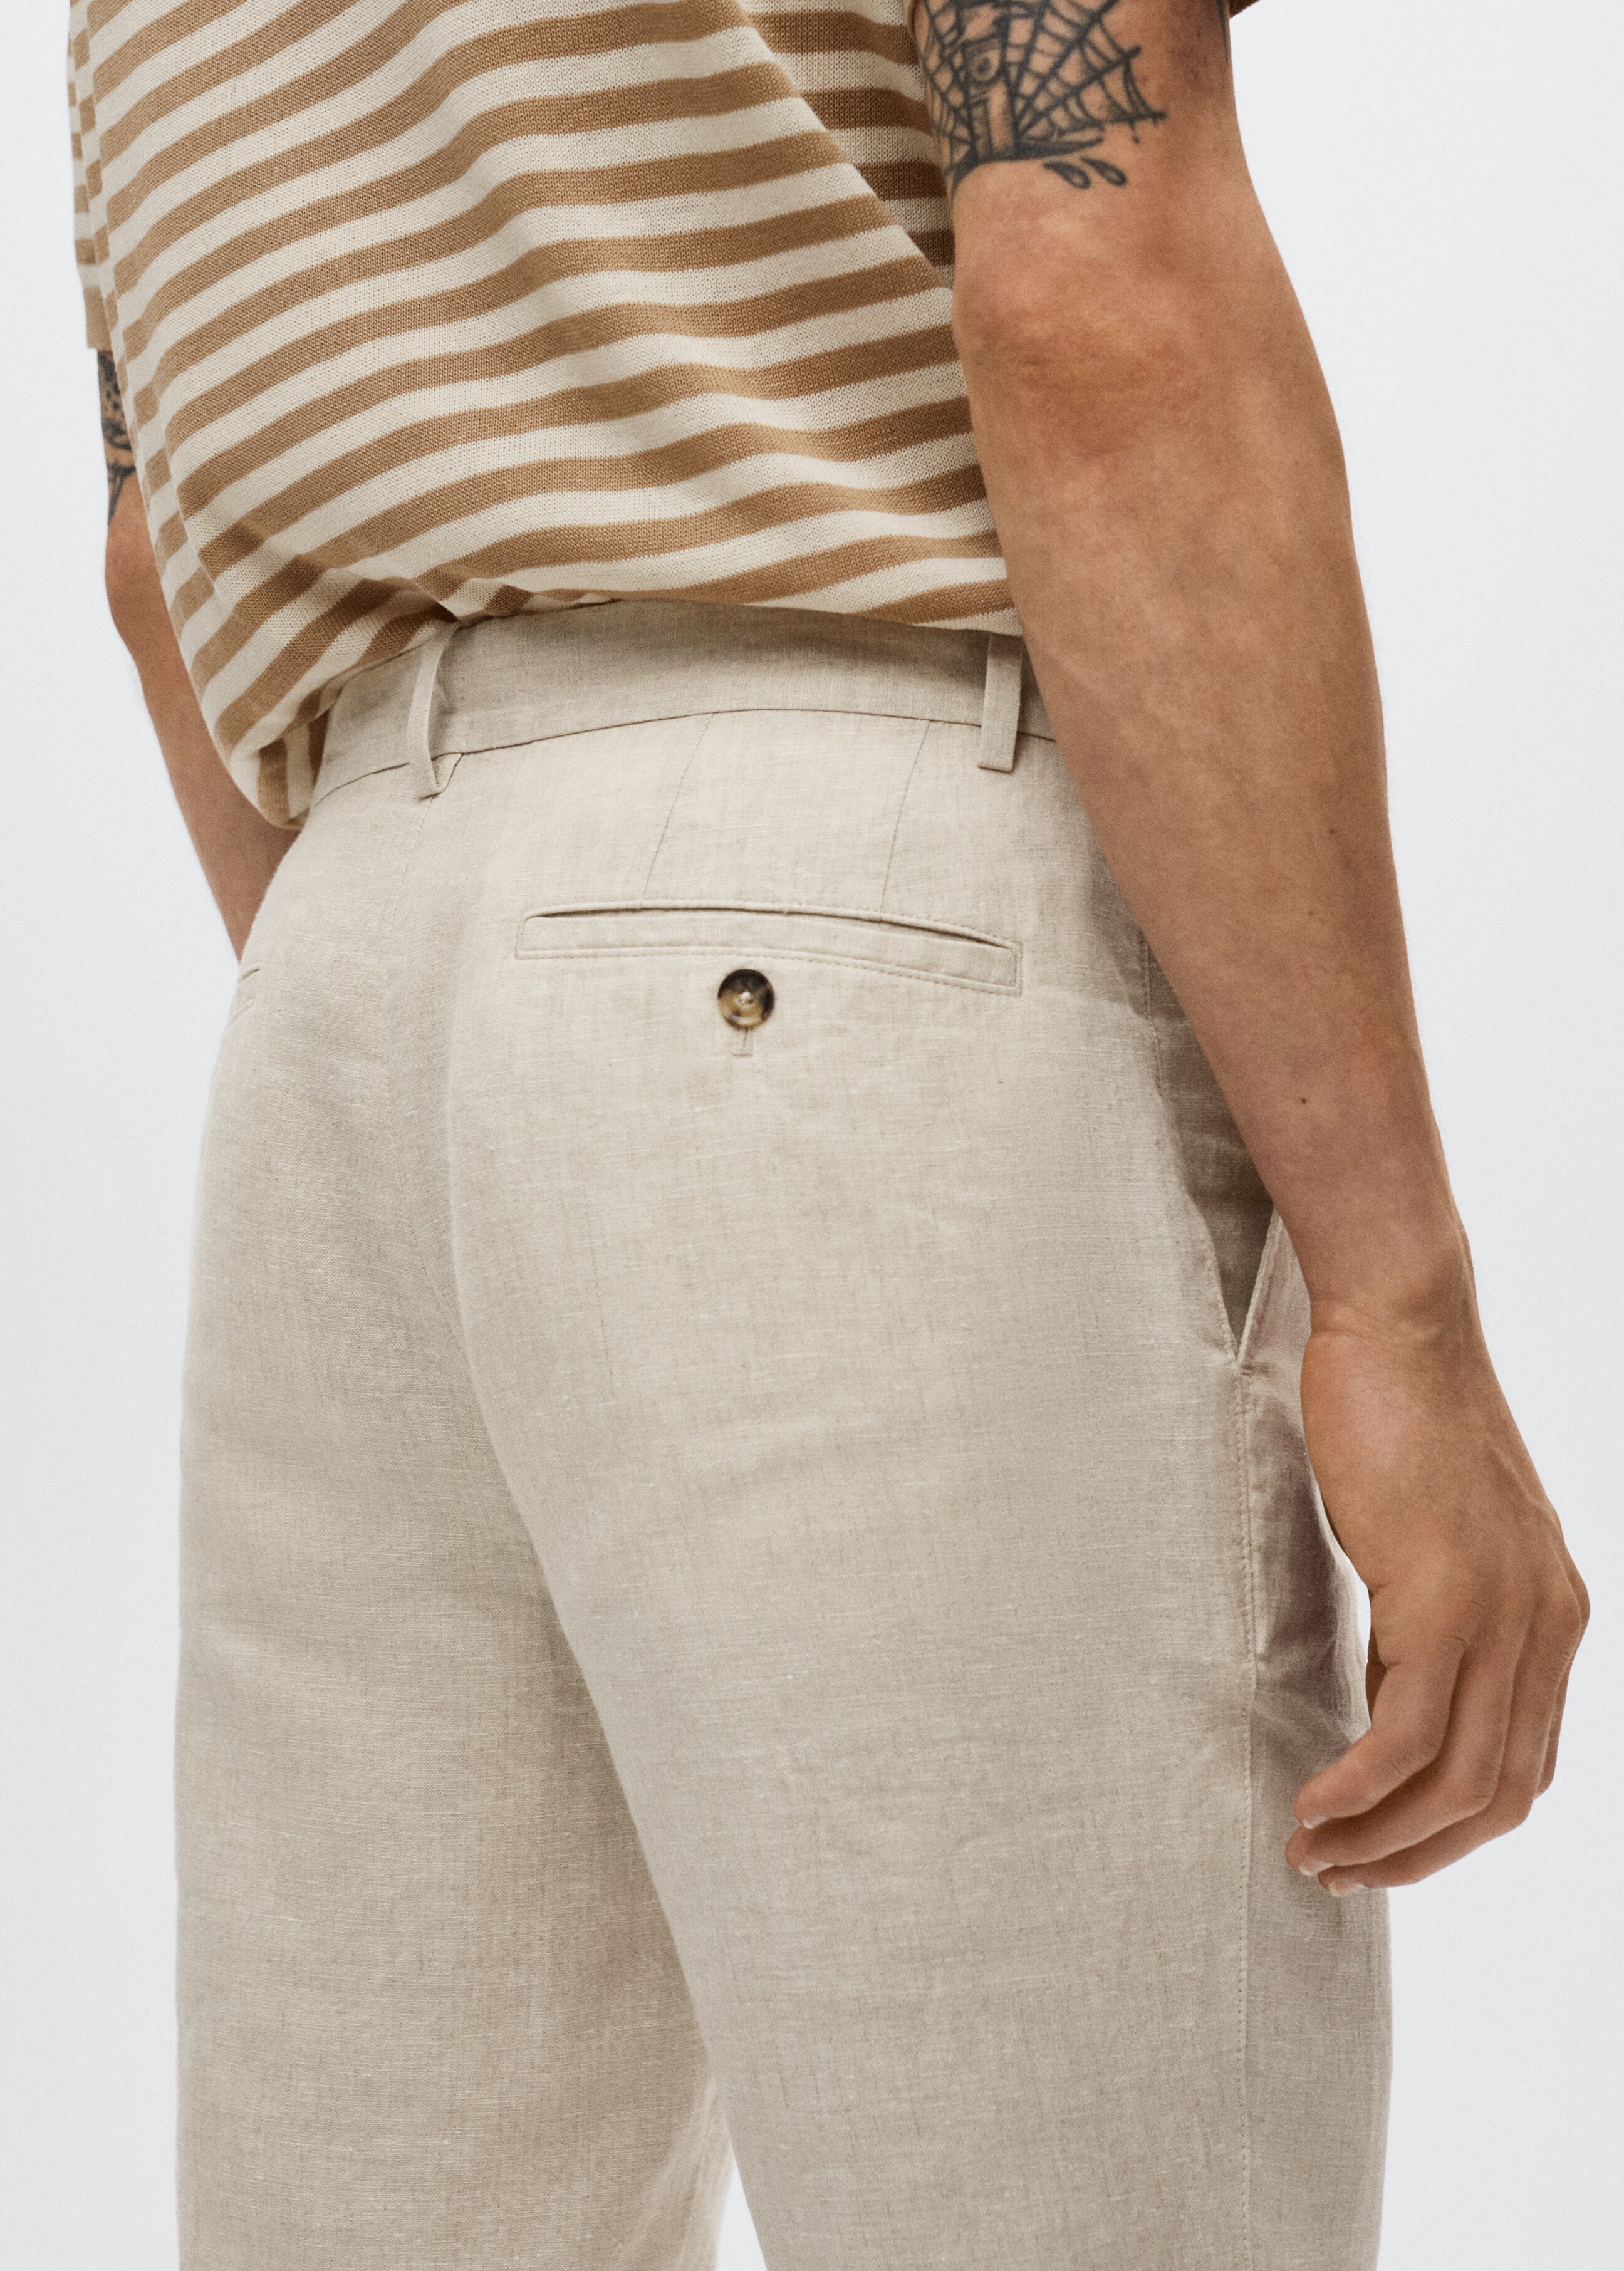 Pantalón lino slim fit - Detalle del artículo 3